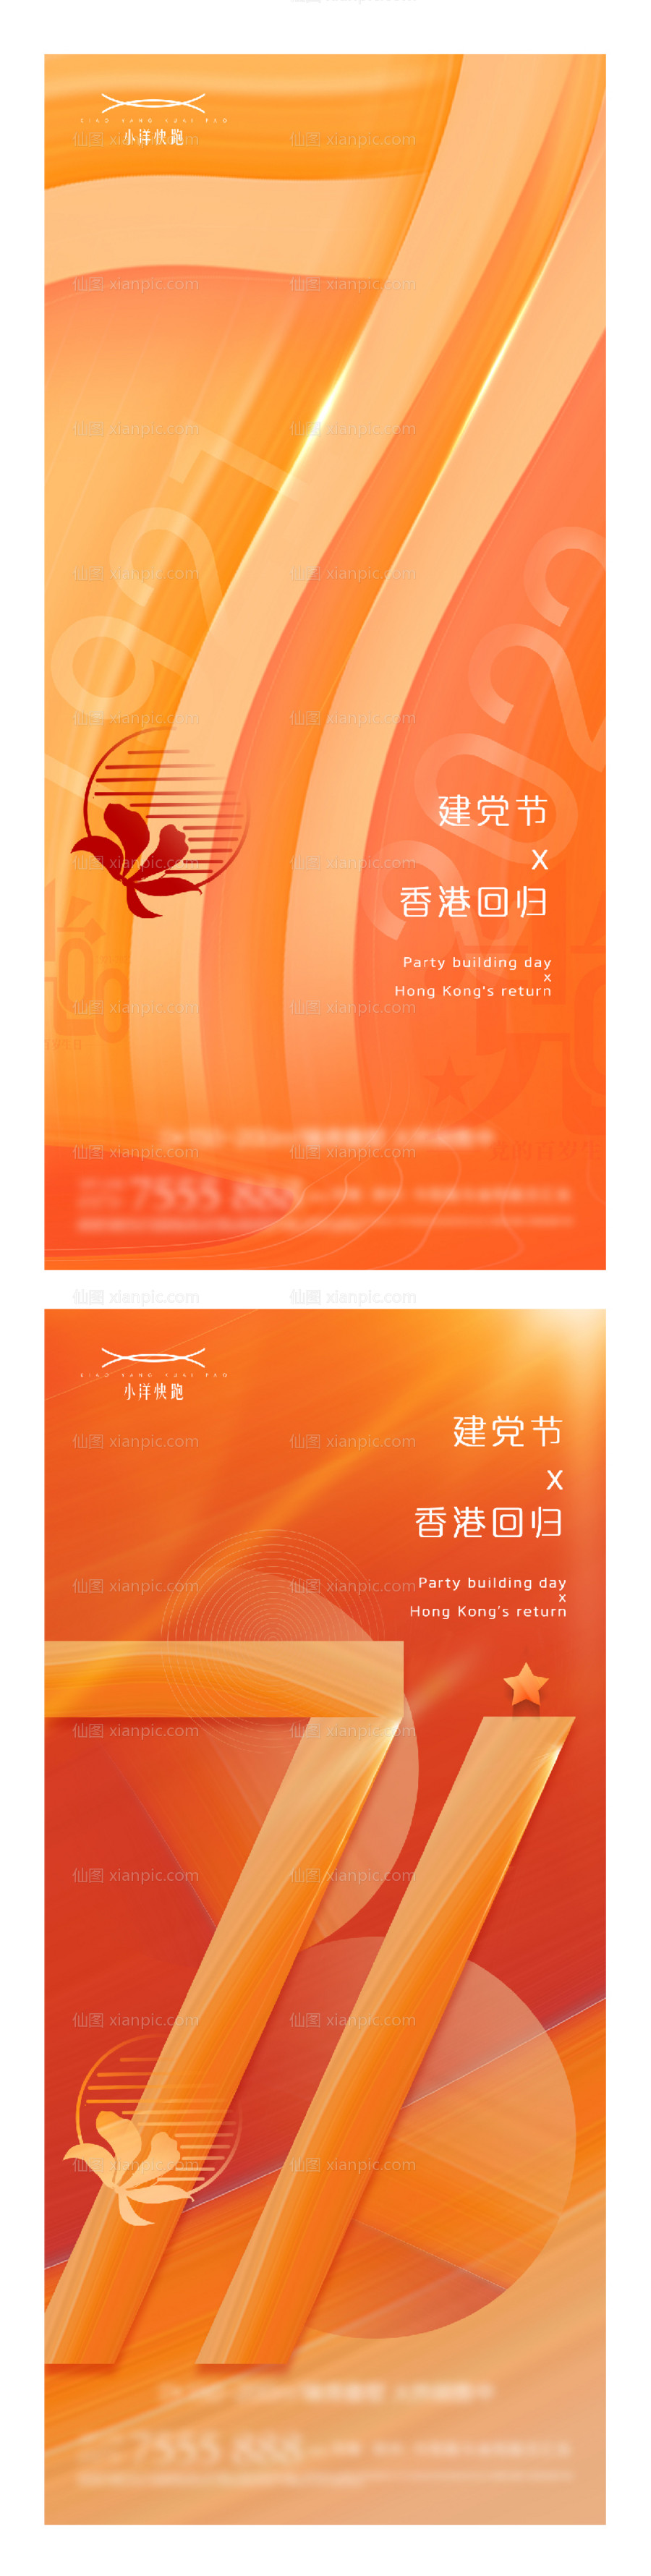 素材乐-建党节香港回归系列海报